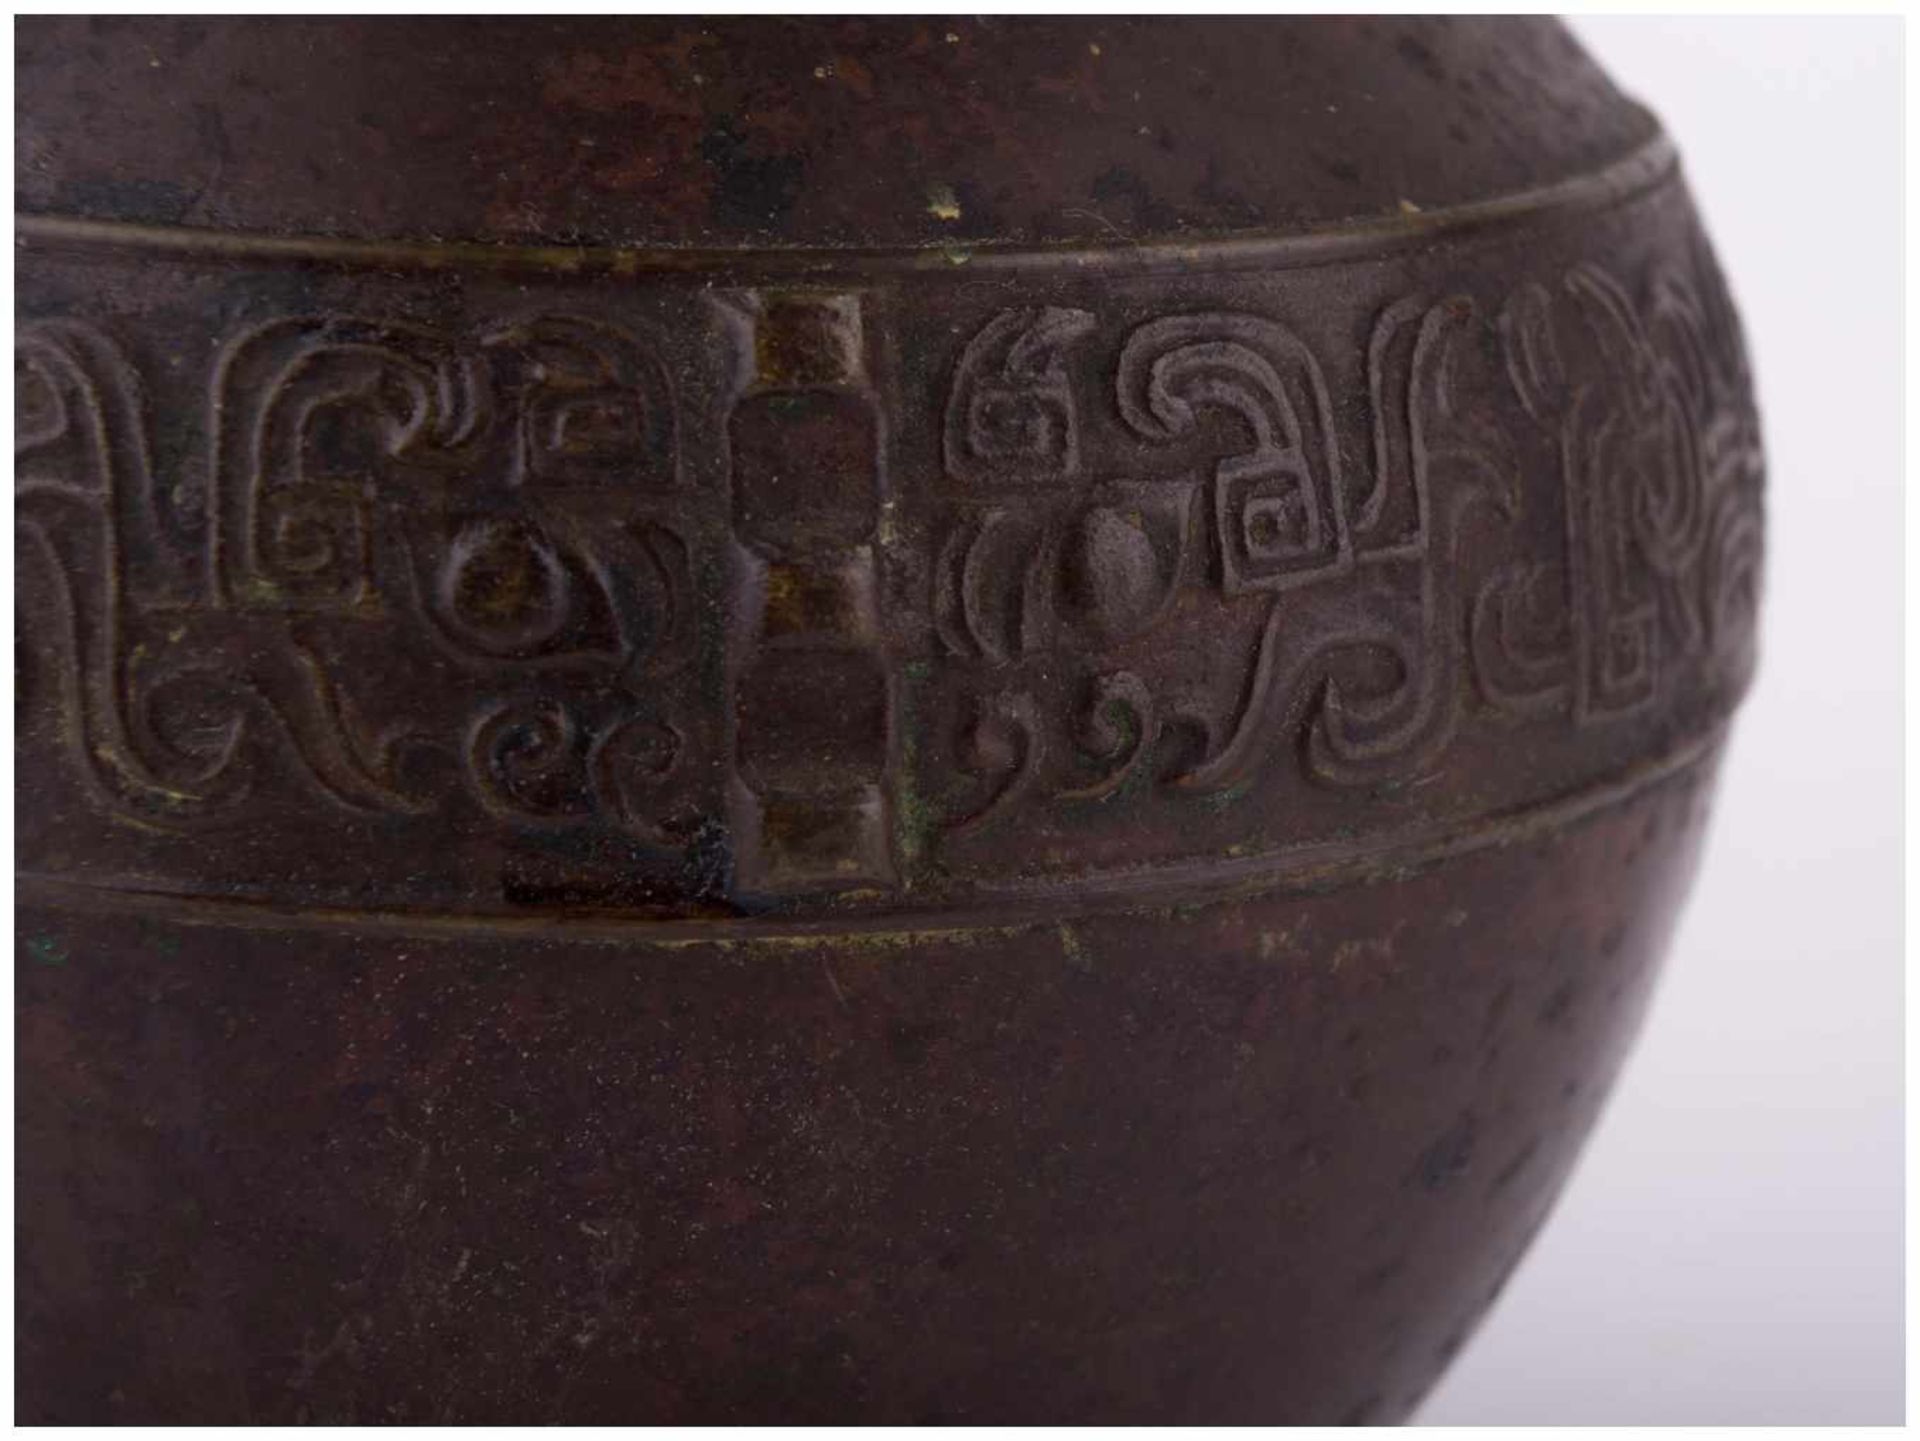 asiatische Vase 19./20. Jhd. / Asian vase, 19th/20th century - Bronze, mit [...] - Image 7 of 8